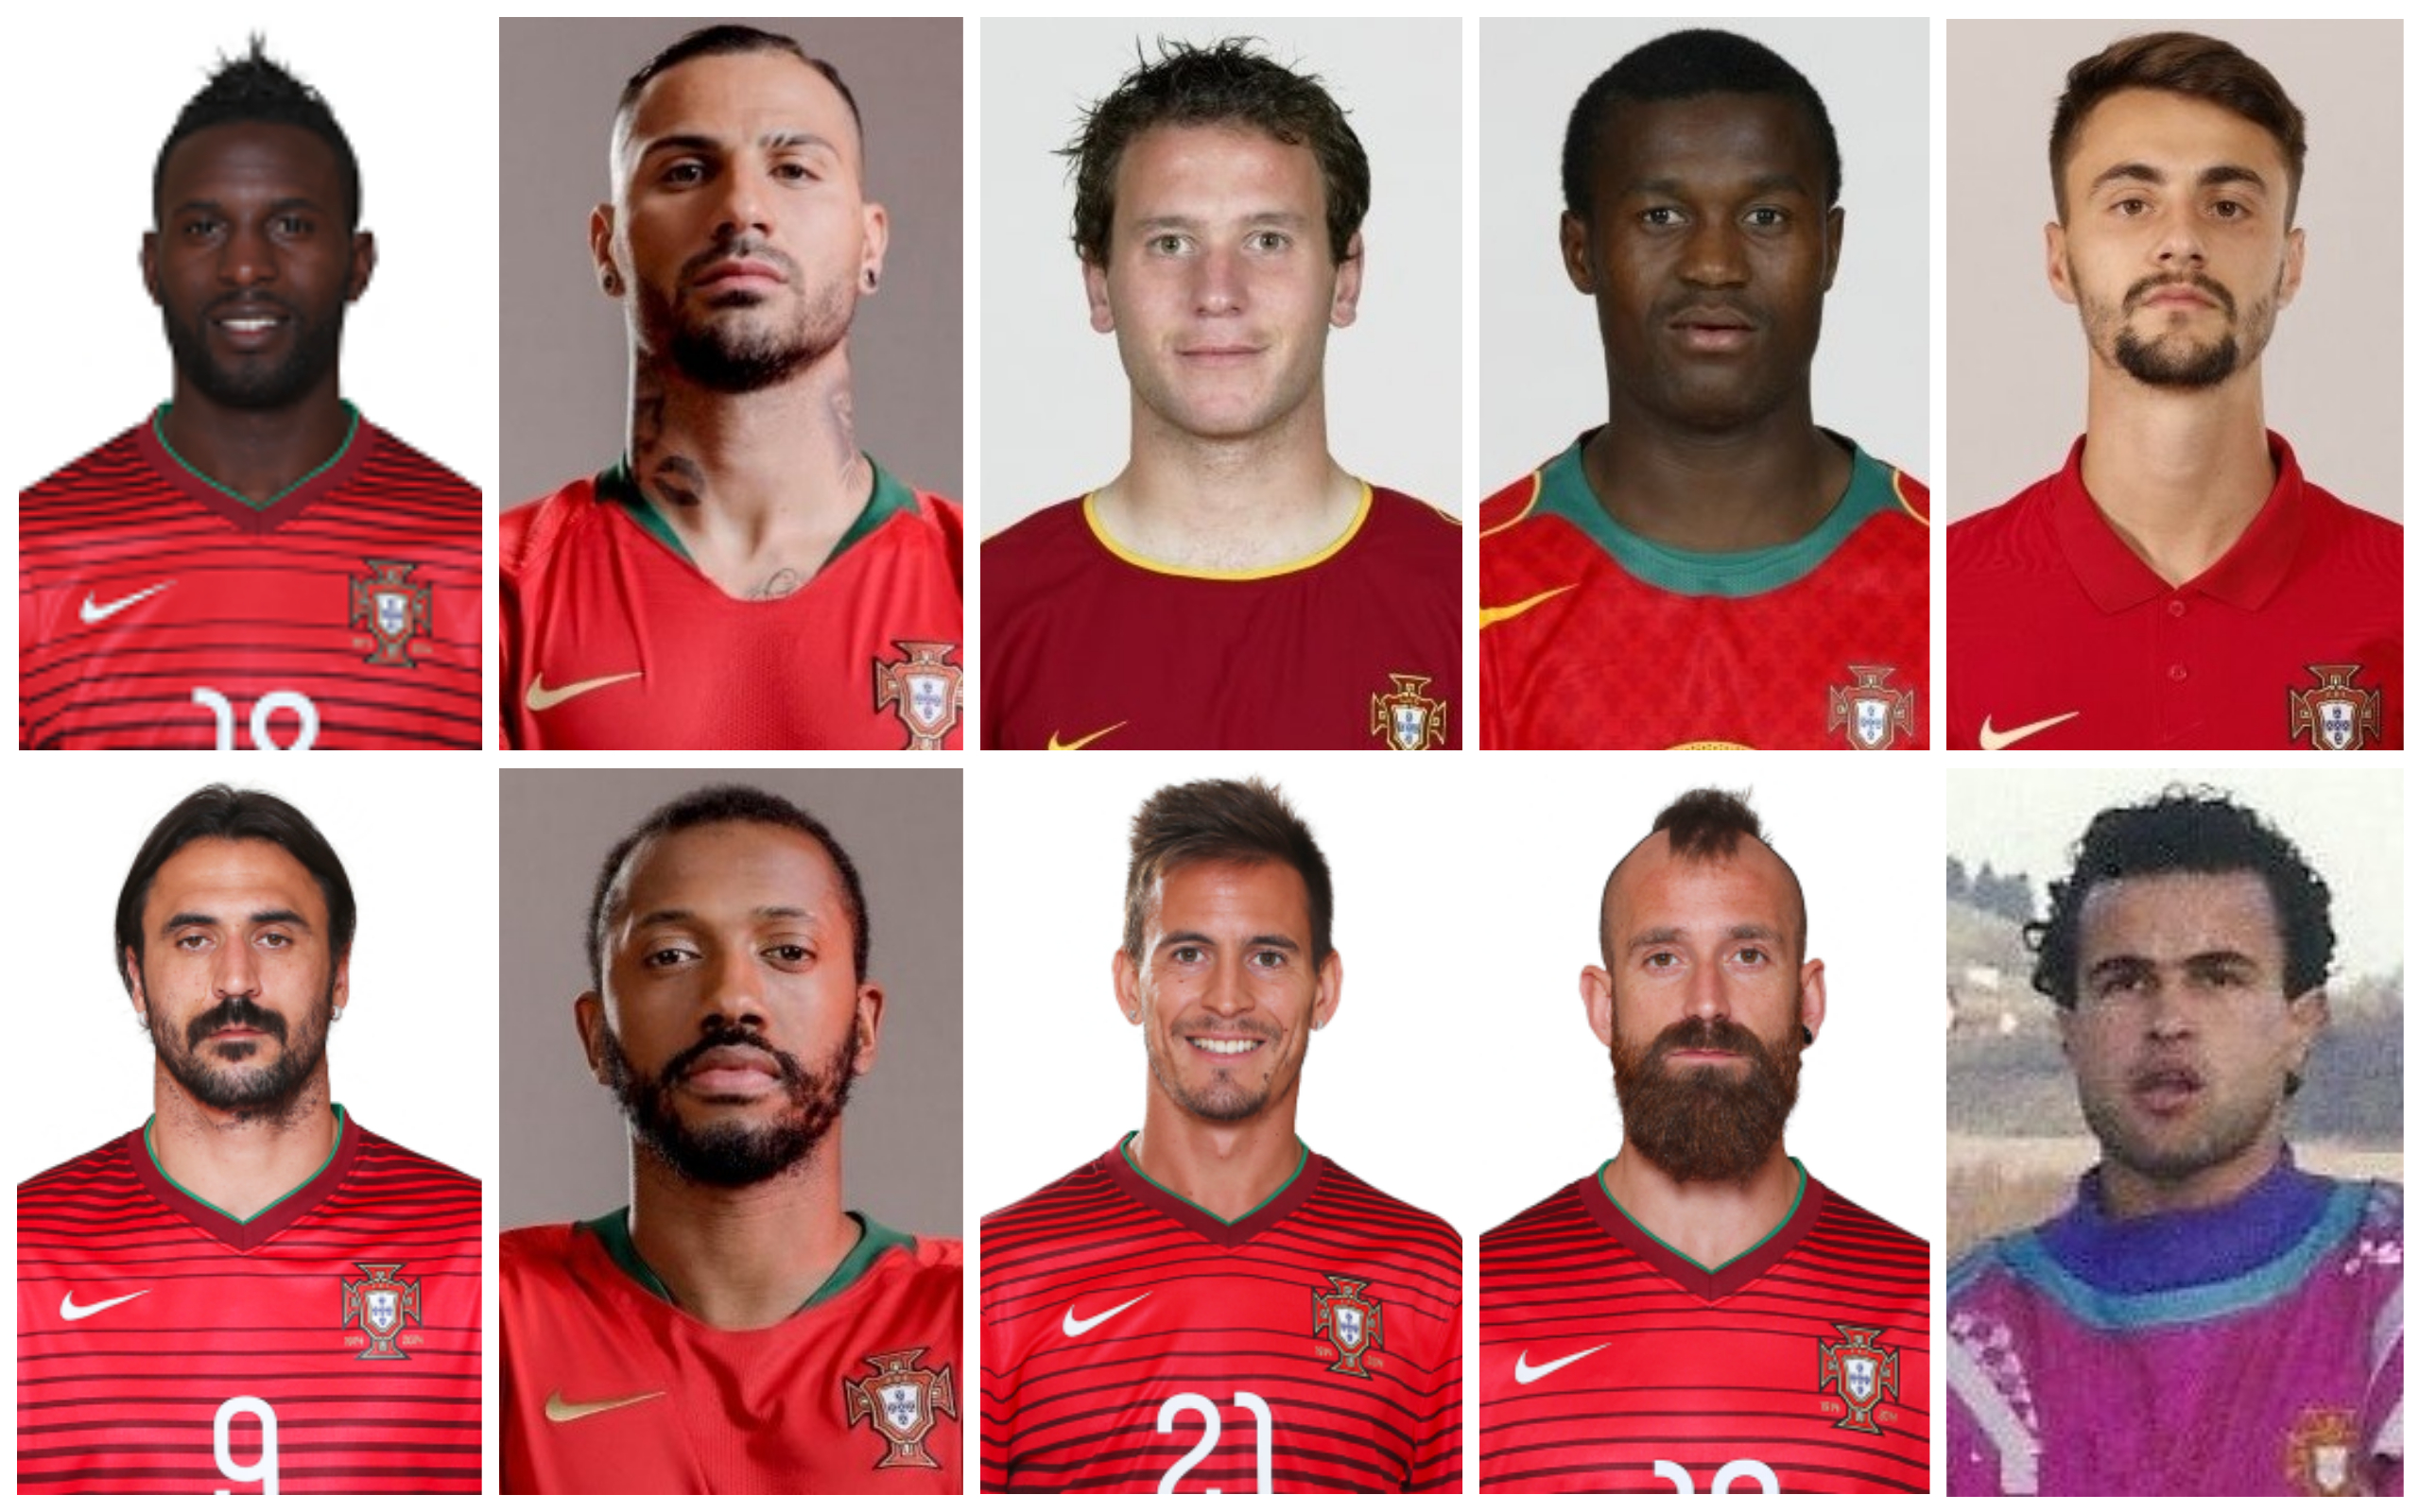 10 Jovens Portugueses para observar em 2020/21 - Footure - Futebol e Cultura